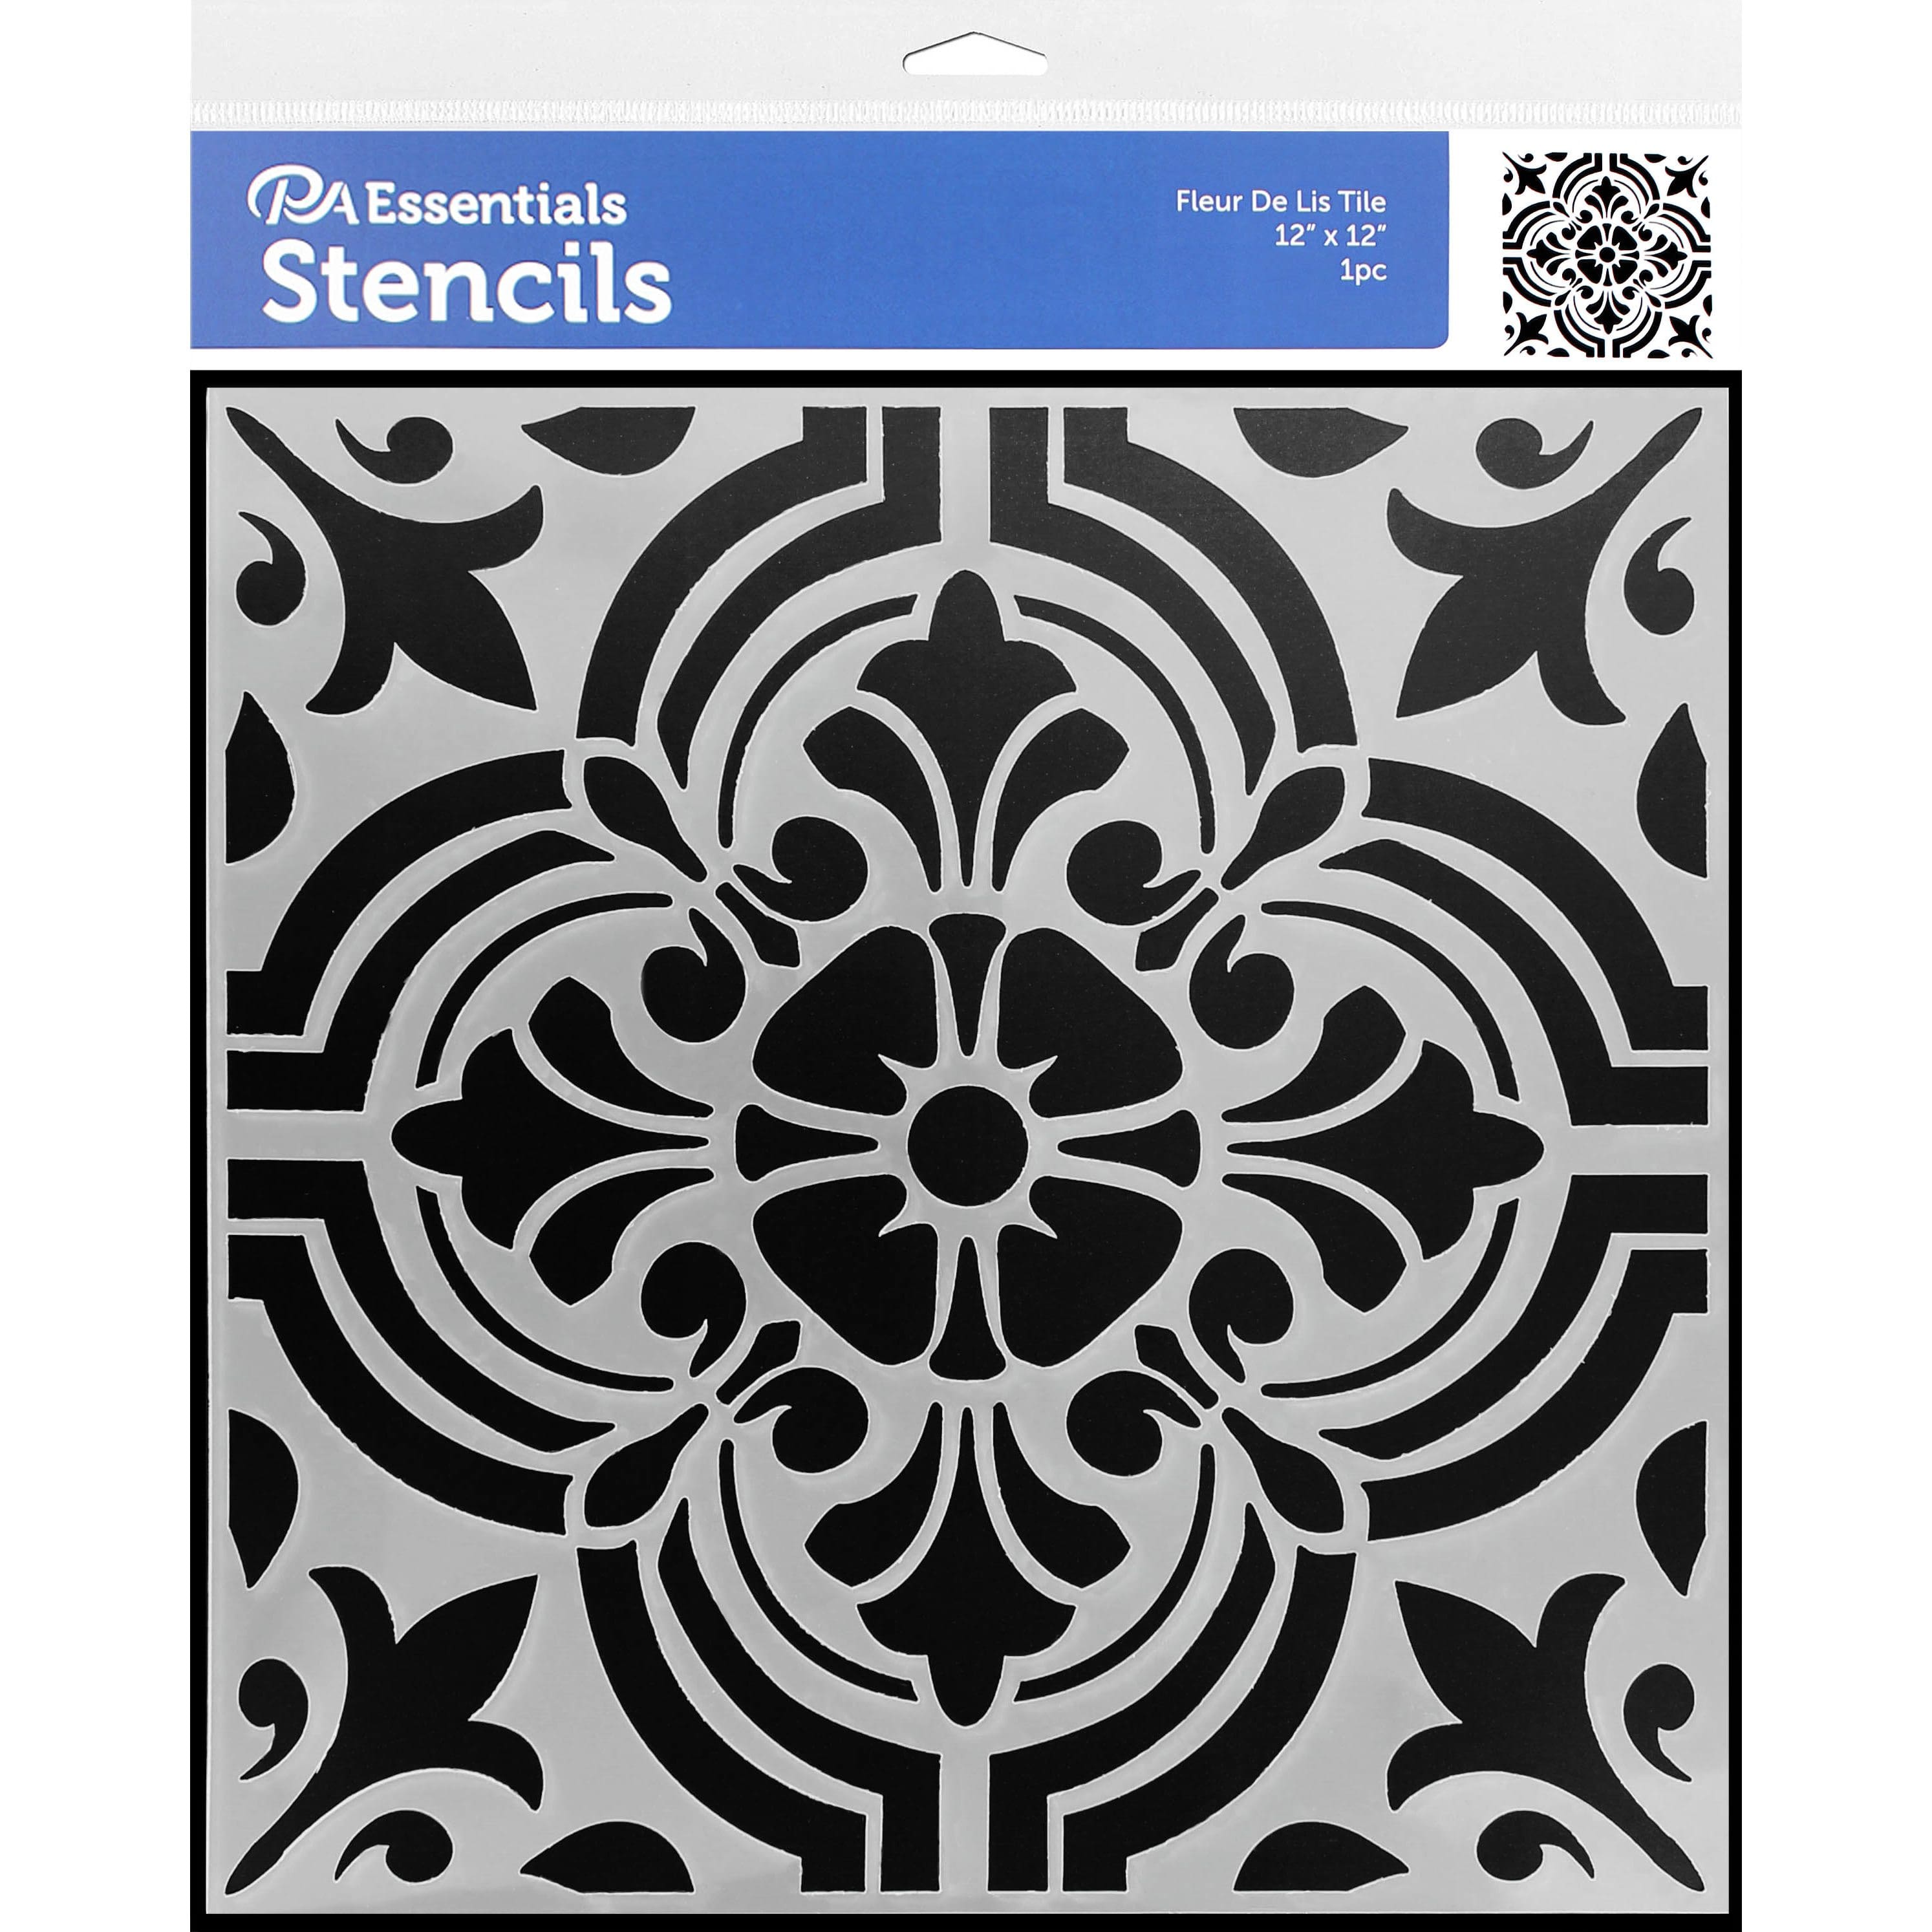 PA Essentials Fleur De Lis Tile Stencil, 12&#x22; x 12&#x22;